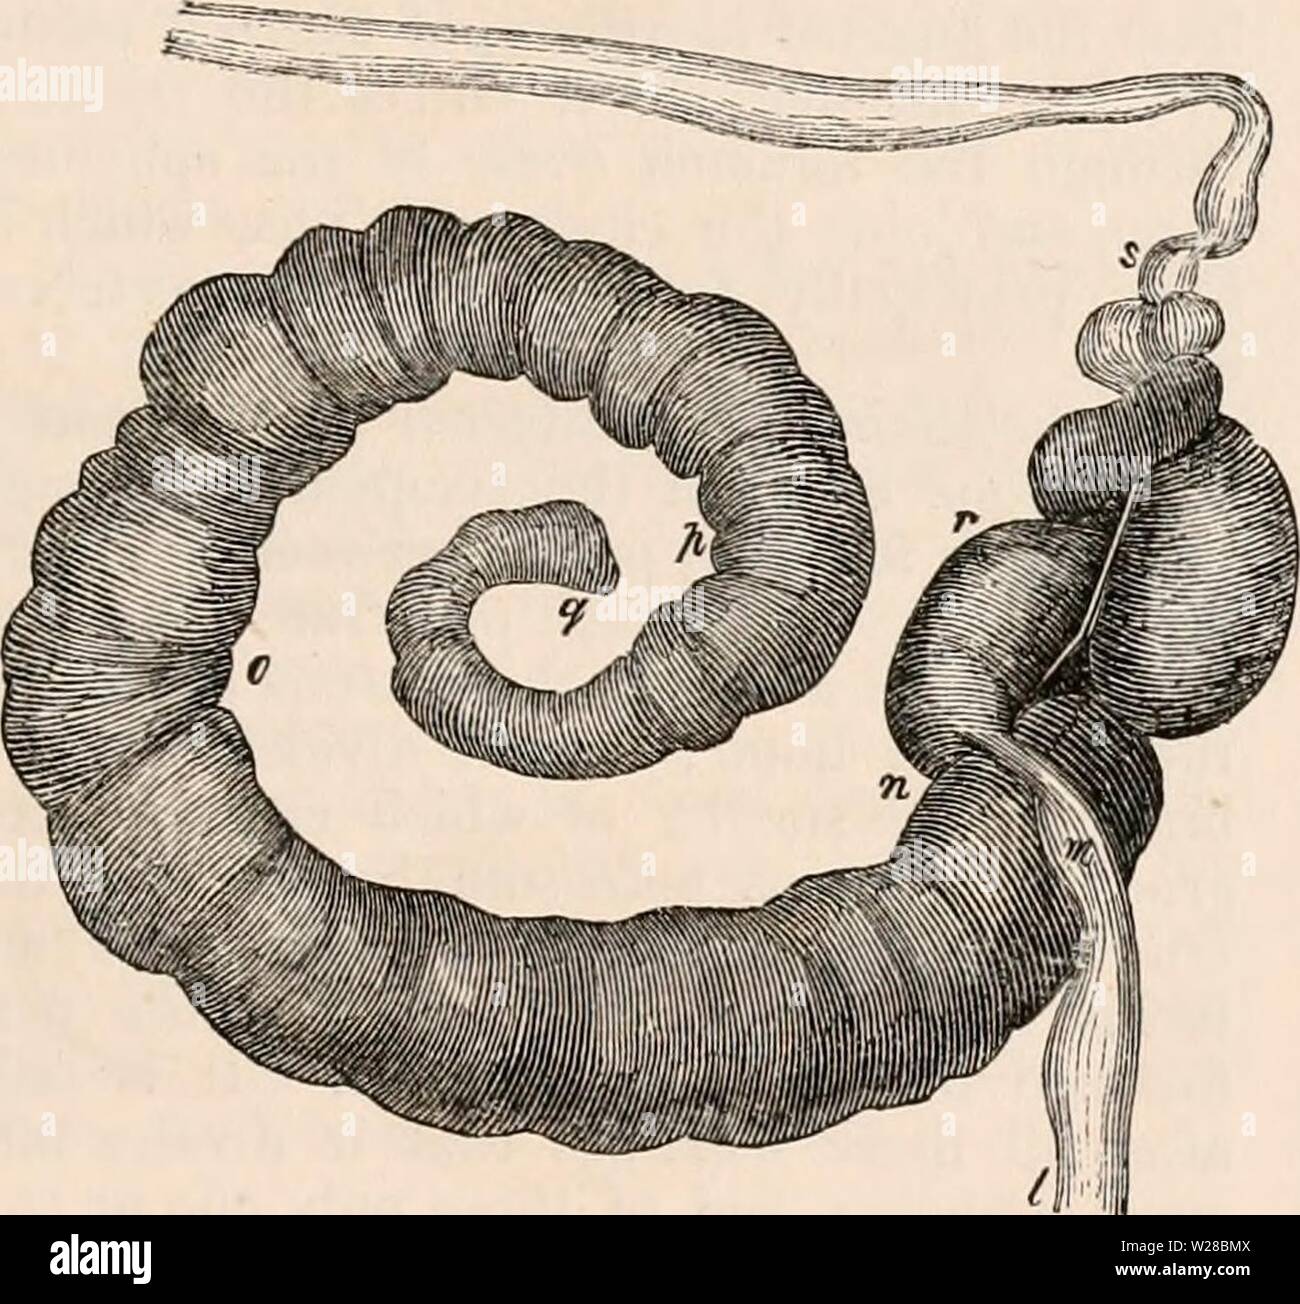 Image d'archive à partir de la page 410 de la cyclopaedia d'anatomie et de Banque D'Images